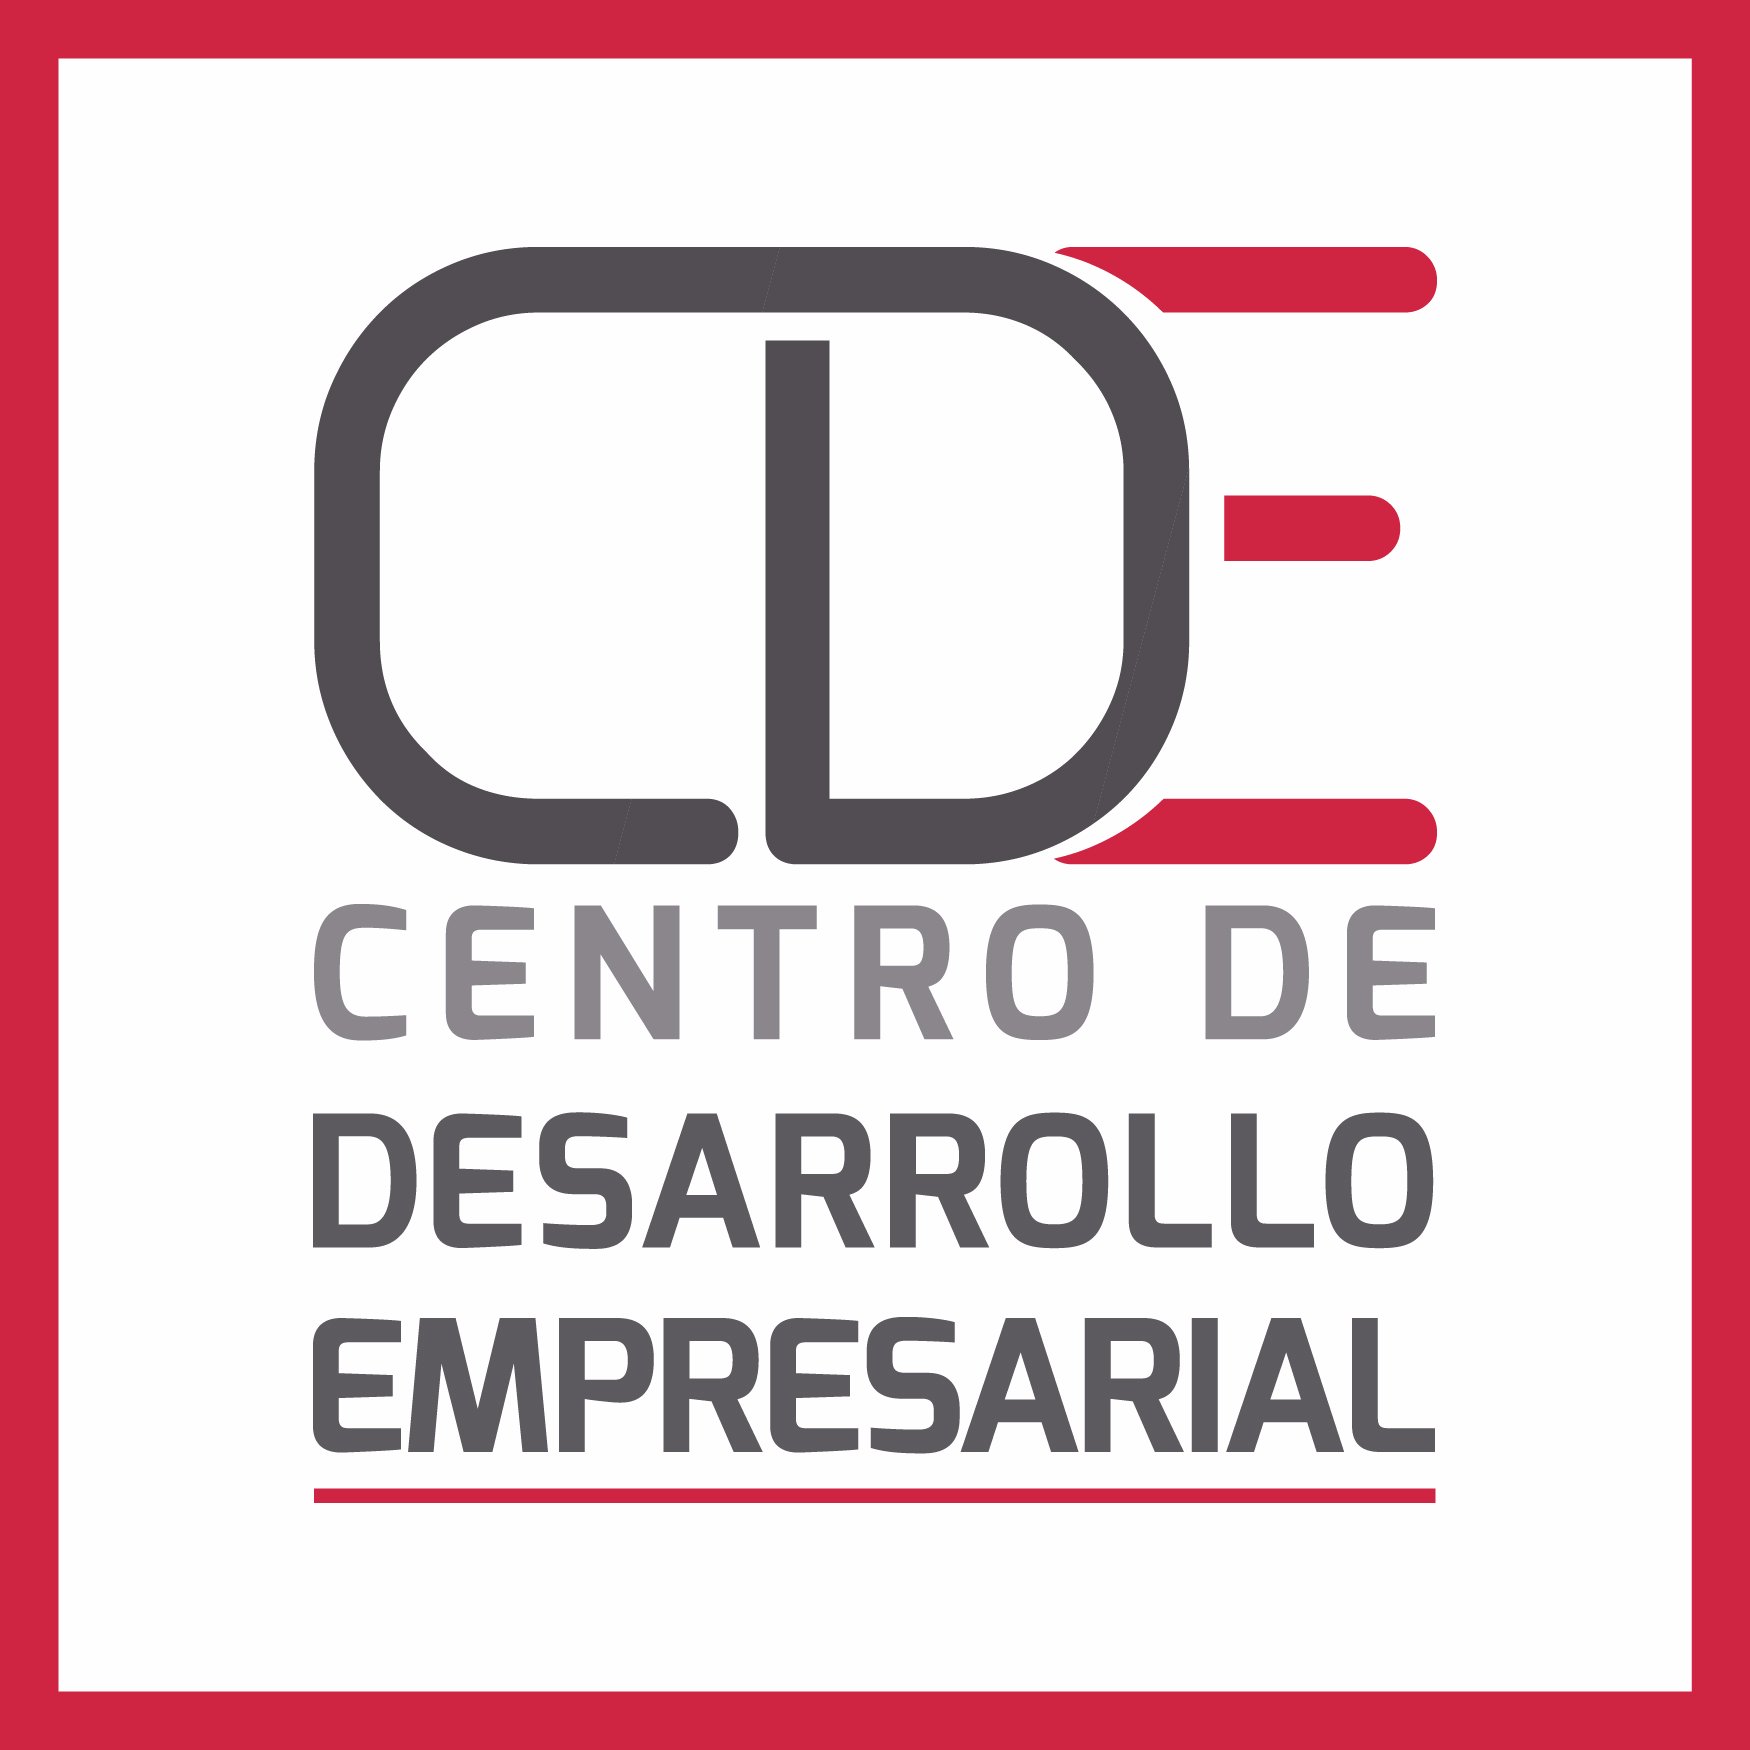 Los Centros de Desarrollo Empresarial (CDE) son oficinas (de atención gratuita) implementadas por PRODUCE en alianza con instituciones públicas y privadas.